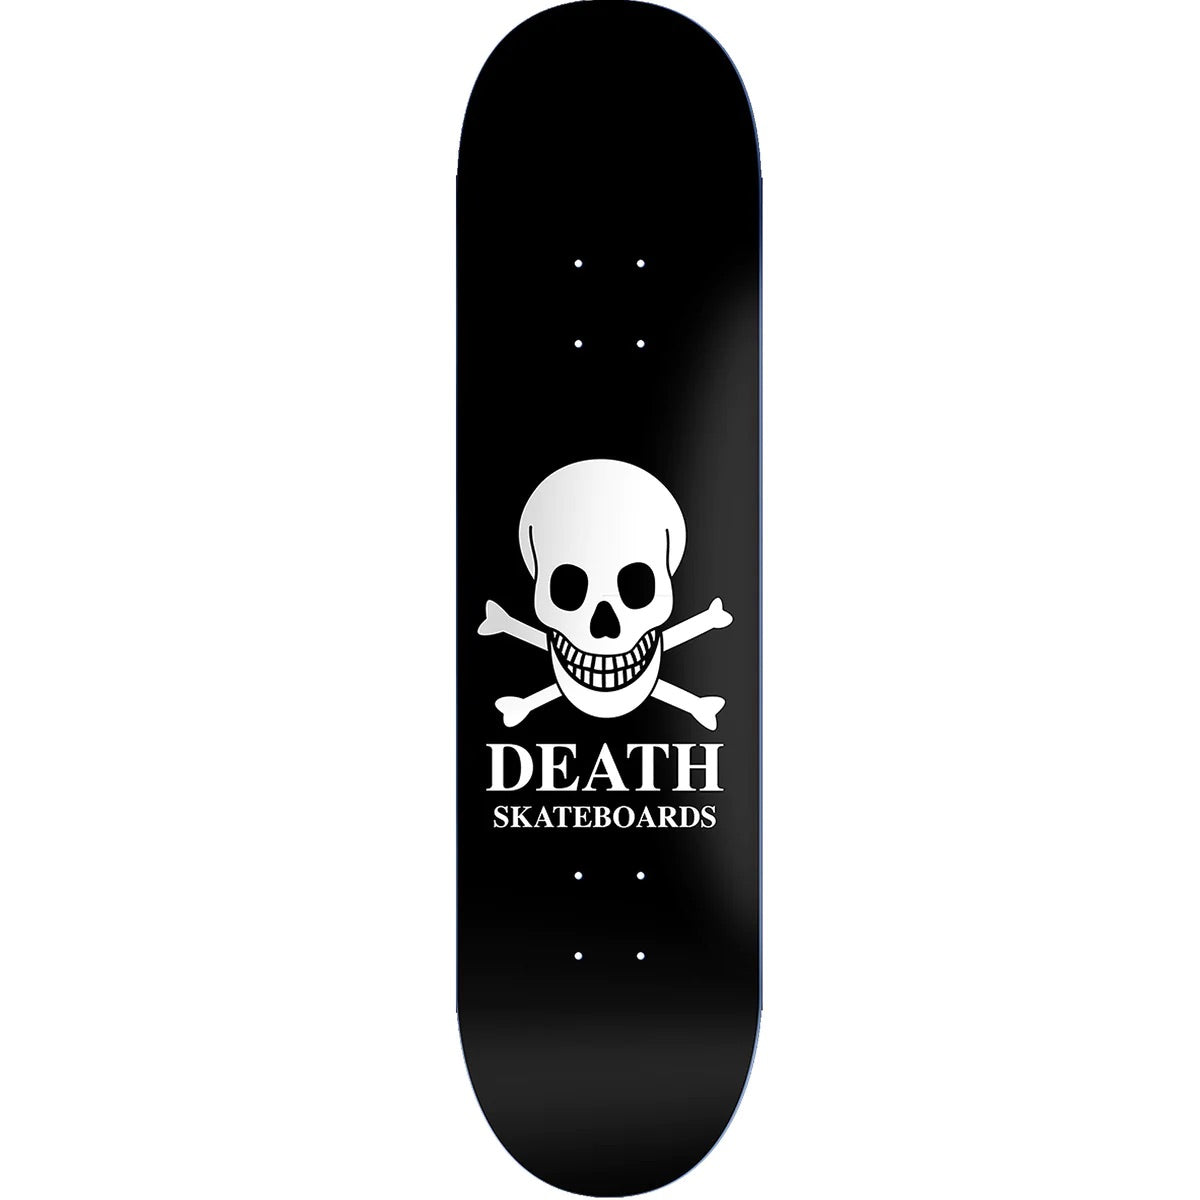 DEATH SKATEBOARDS BLACK ‘OG SKULL’ DECK 8.25”